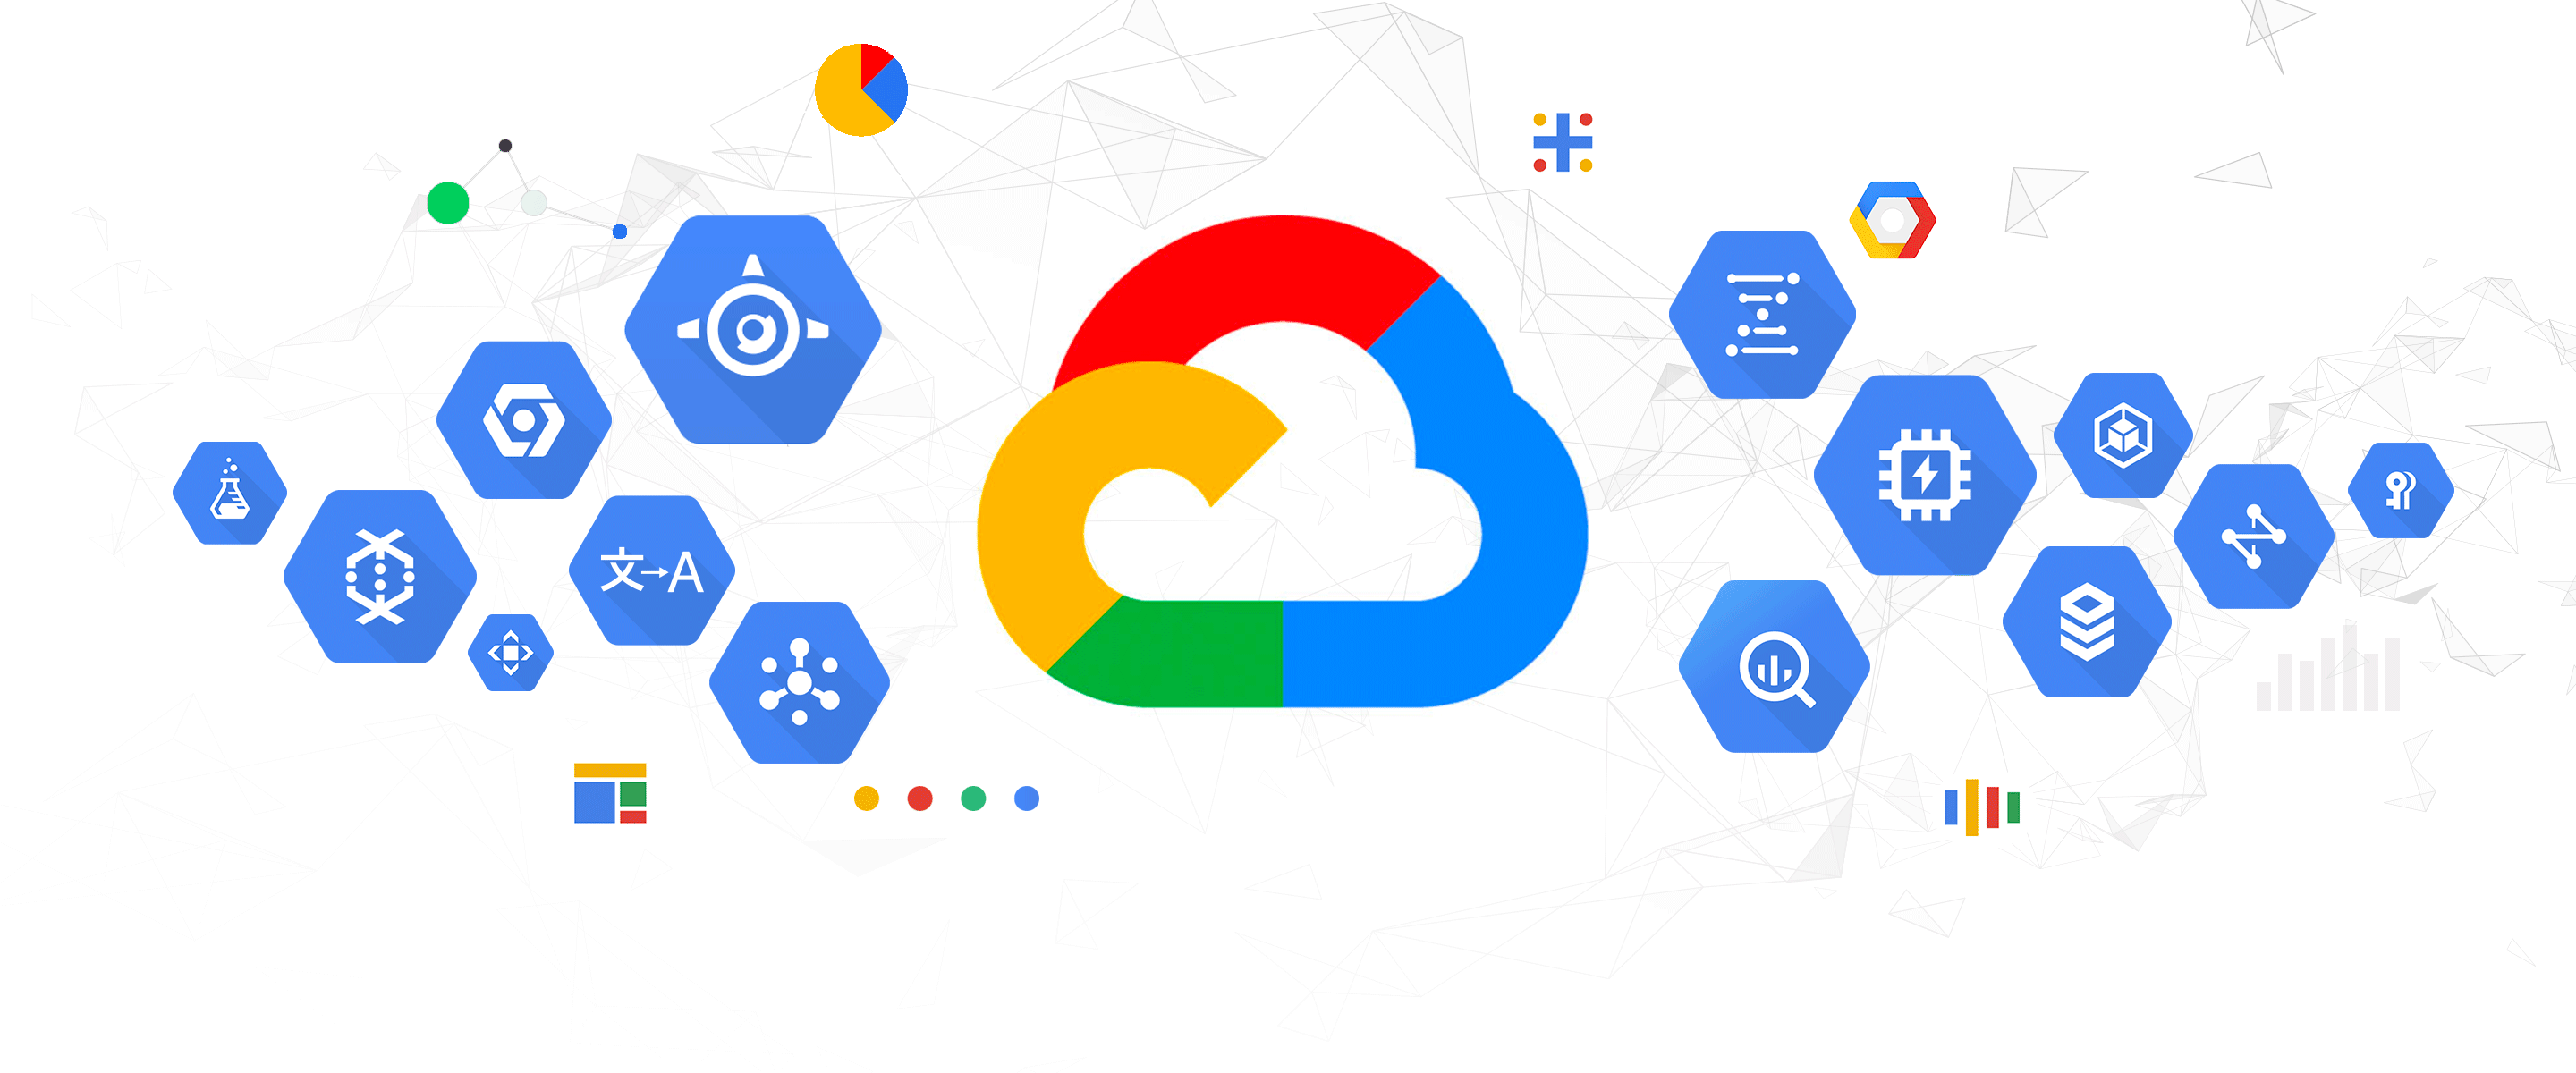 Google Cloud Platform | GCP Services & Product Review 2022